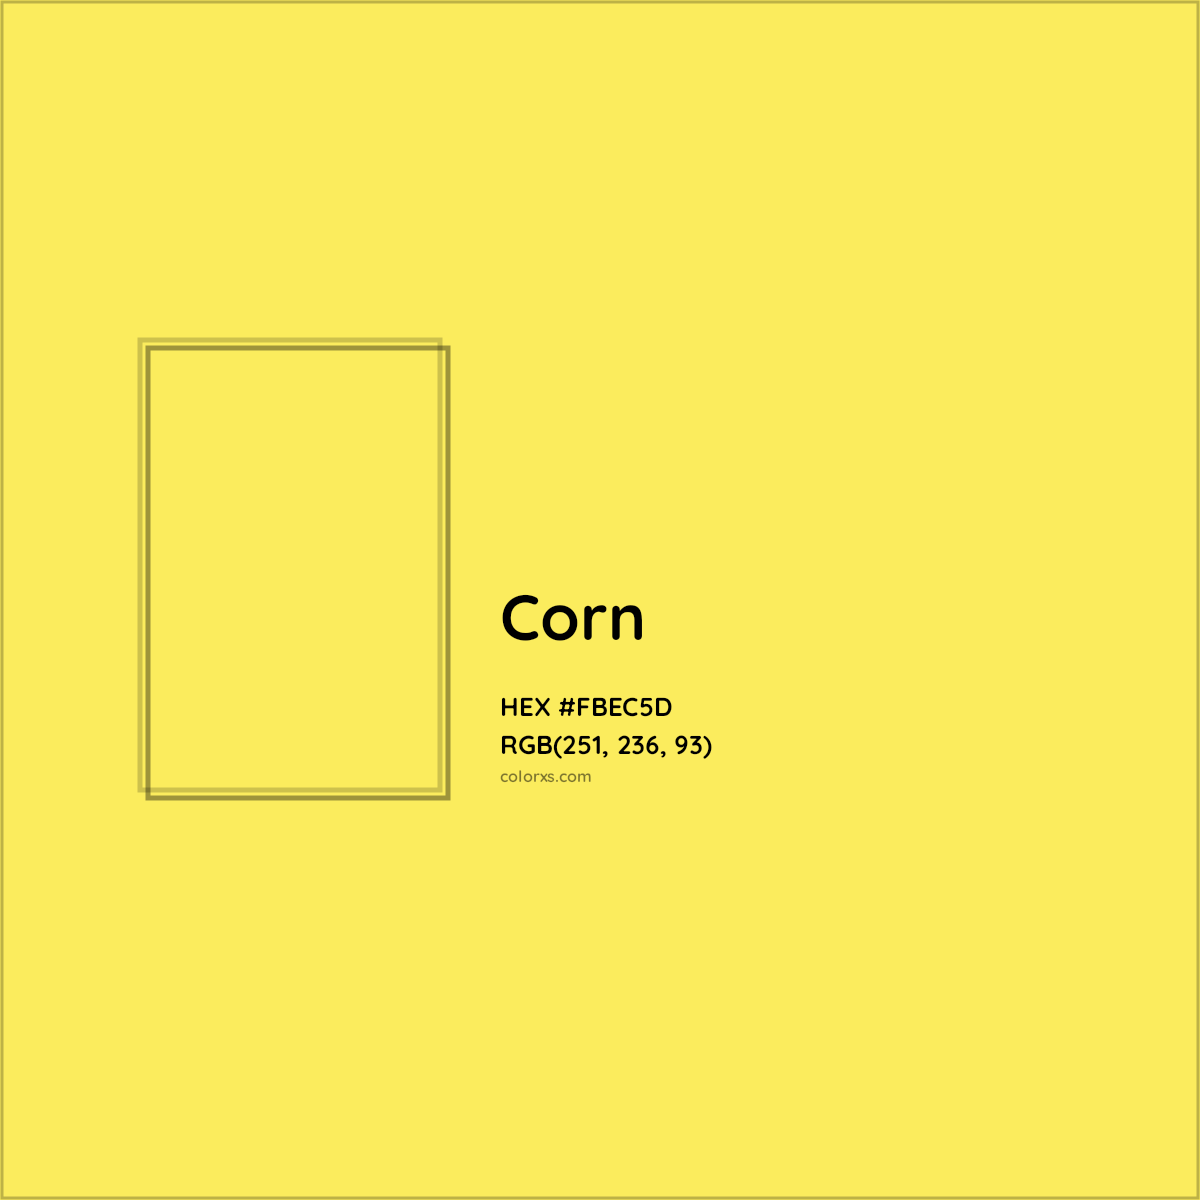 HEX #FBEC5D Corn Color - Color Code